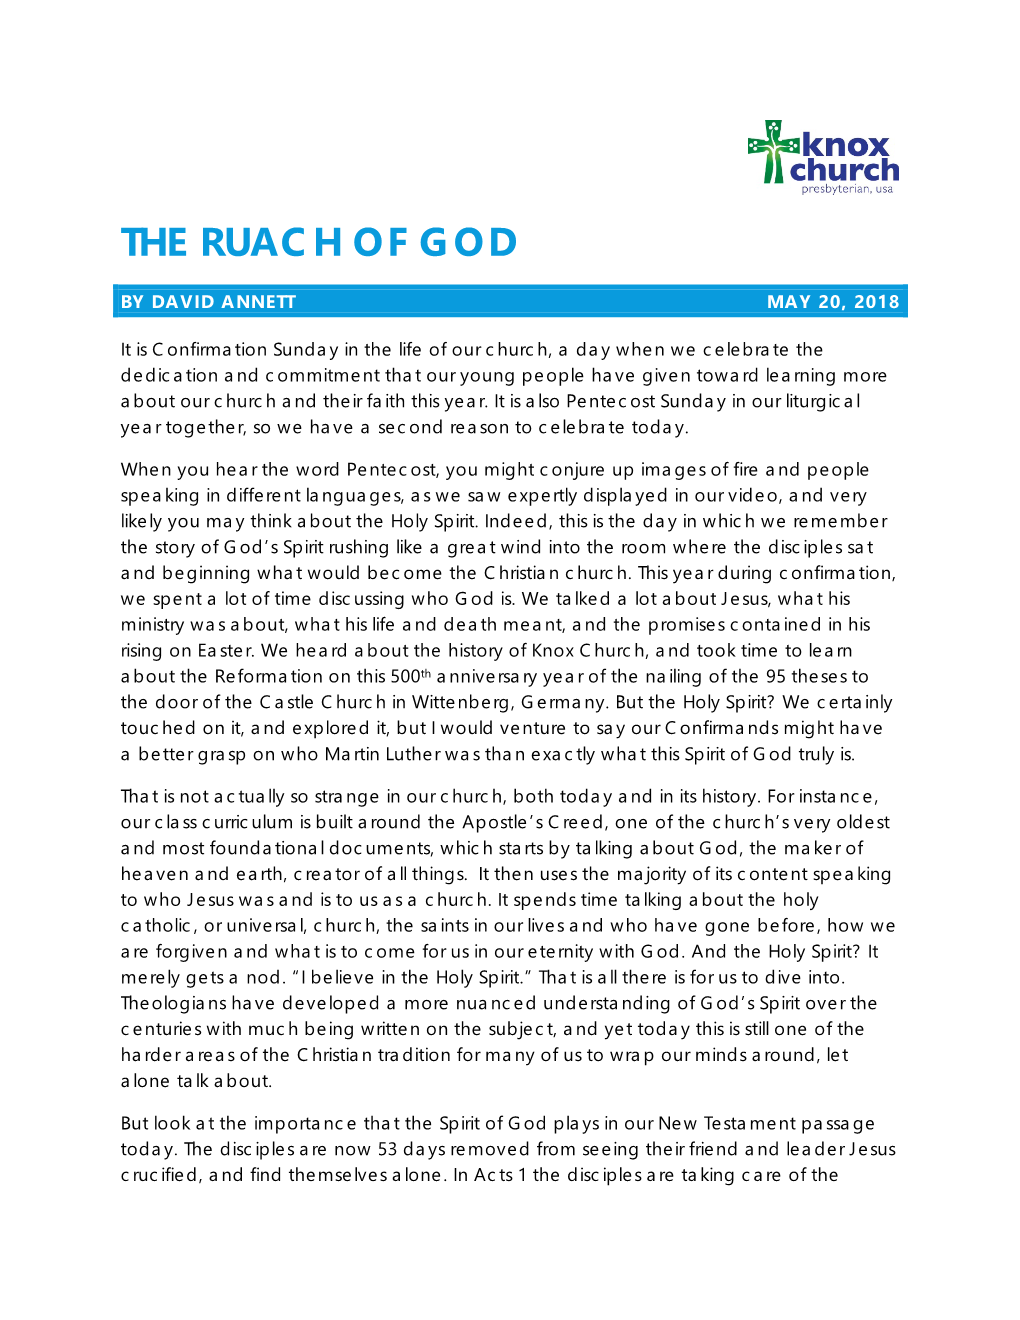 The Ruach of God